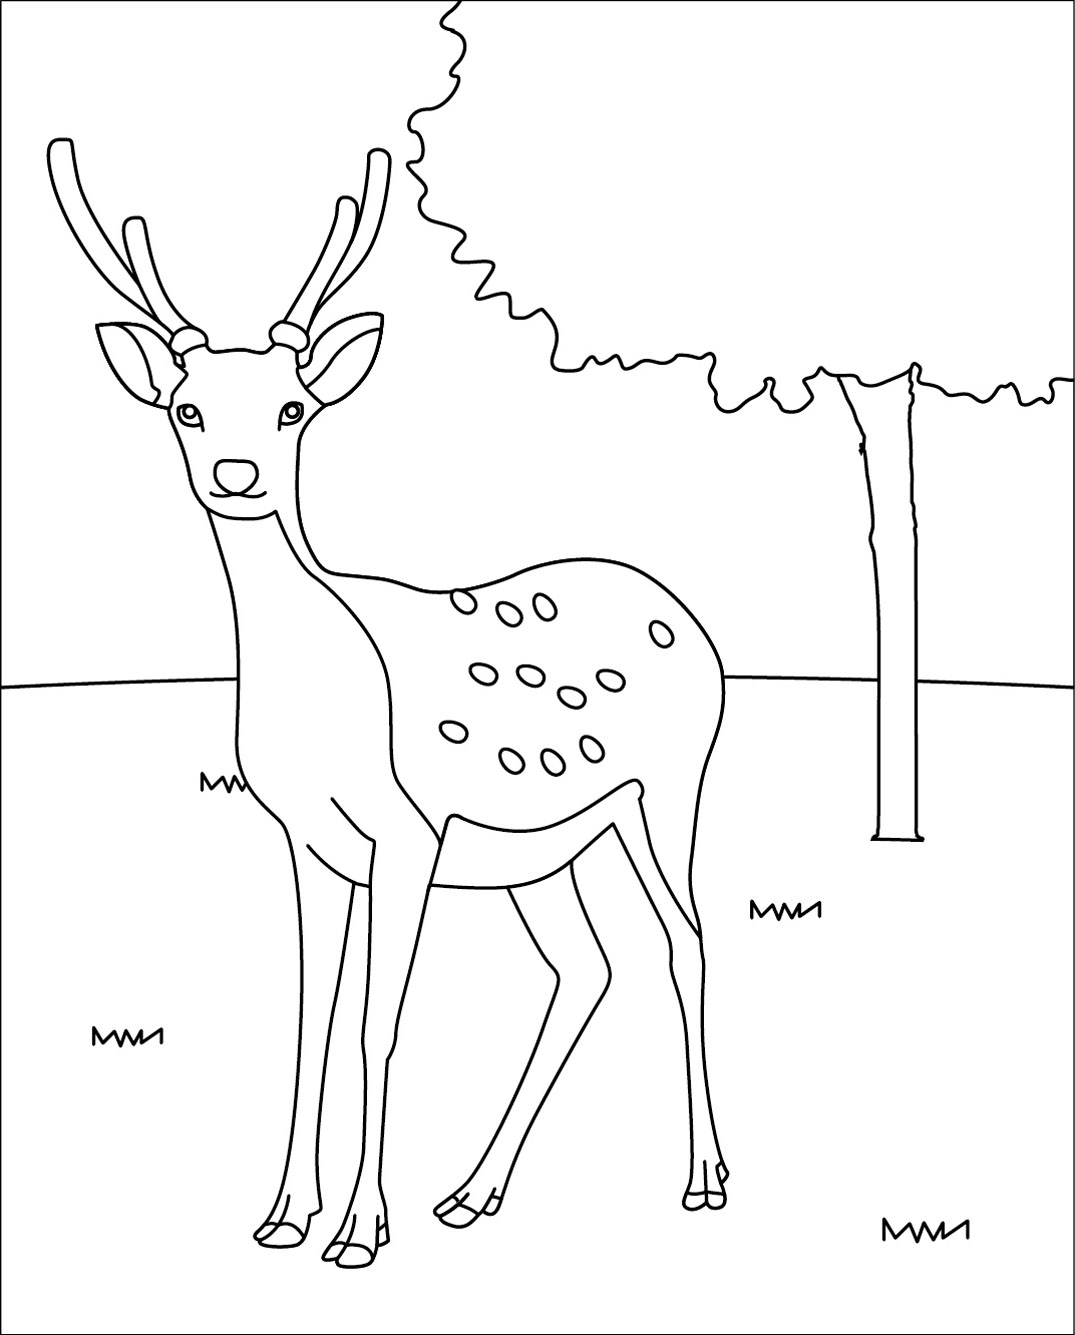 動物の壁紙 綺麗な鹿 イラスト 簡単